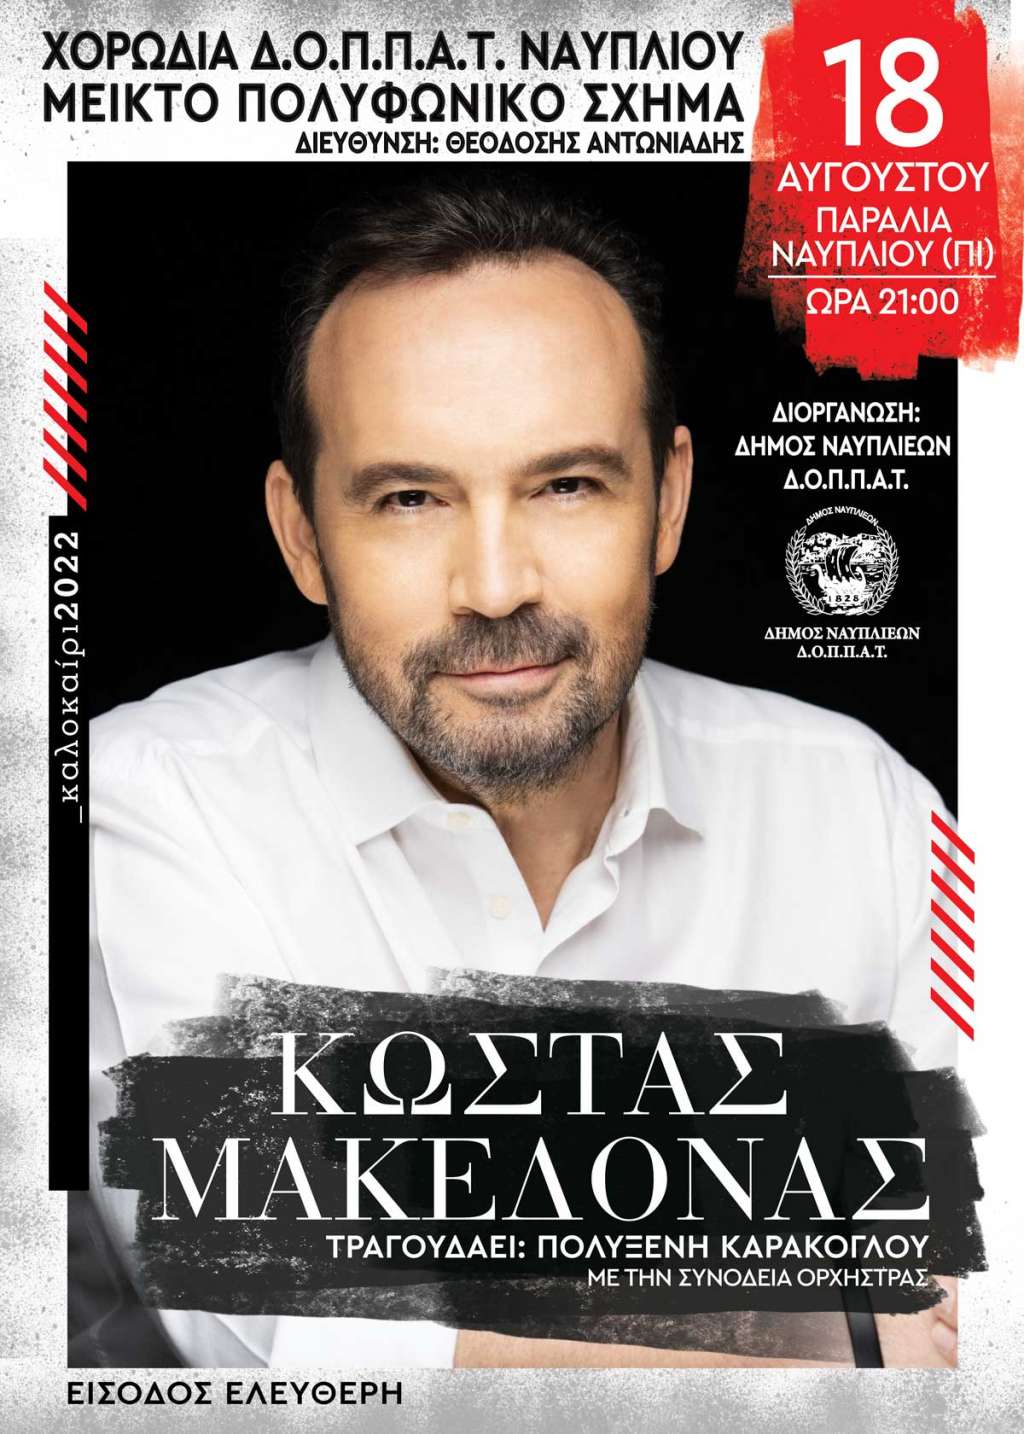 Δήμος Ναυπλιέων: Συναυλία του Κώστα Μακεδόνα την Πέμπτη 18/08 - ΠΕΛΟΠΟΝΝΗΣΟΣ